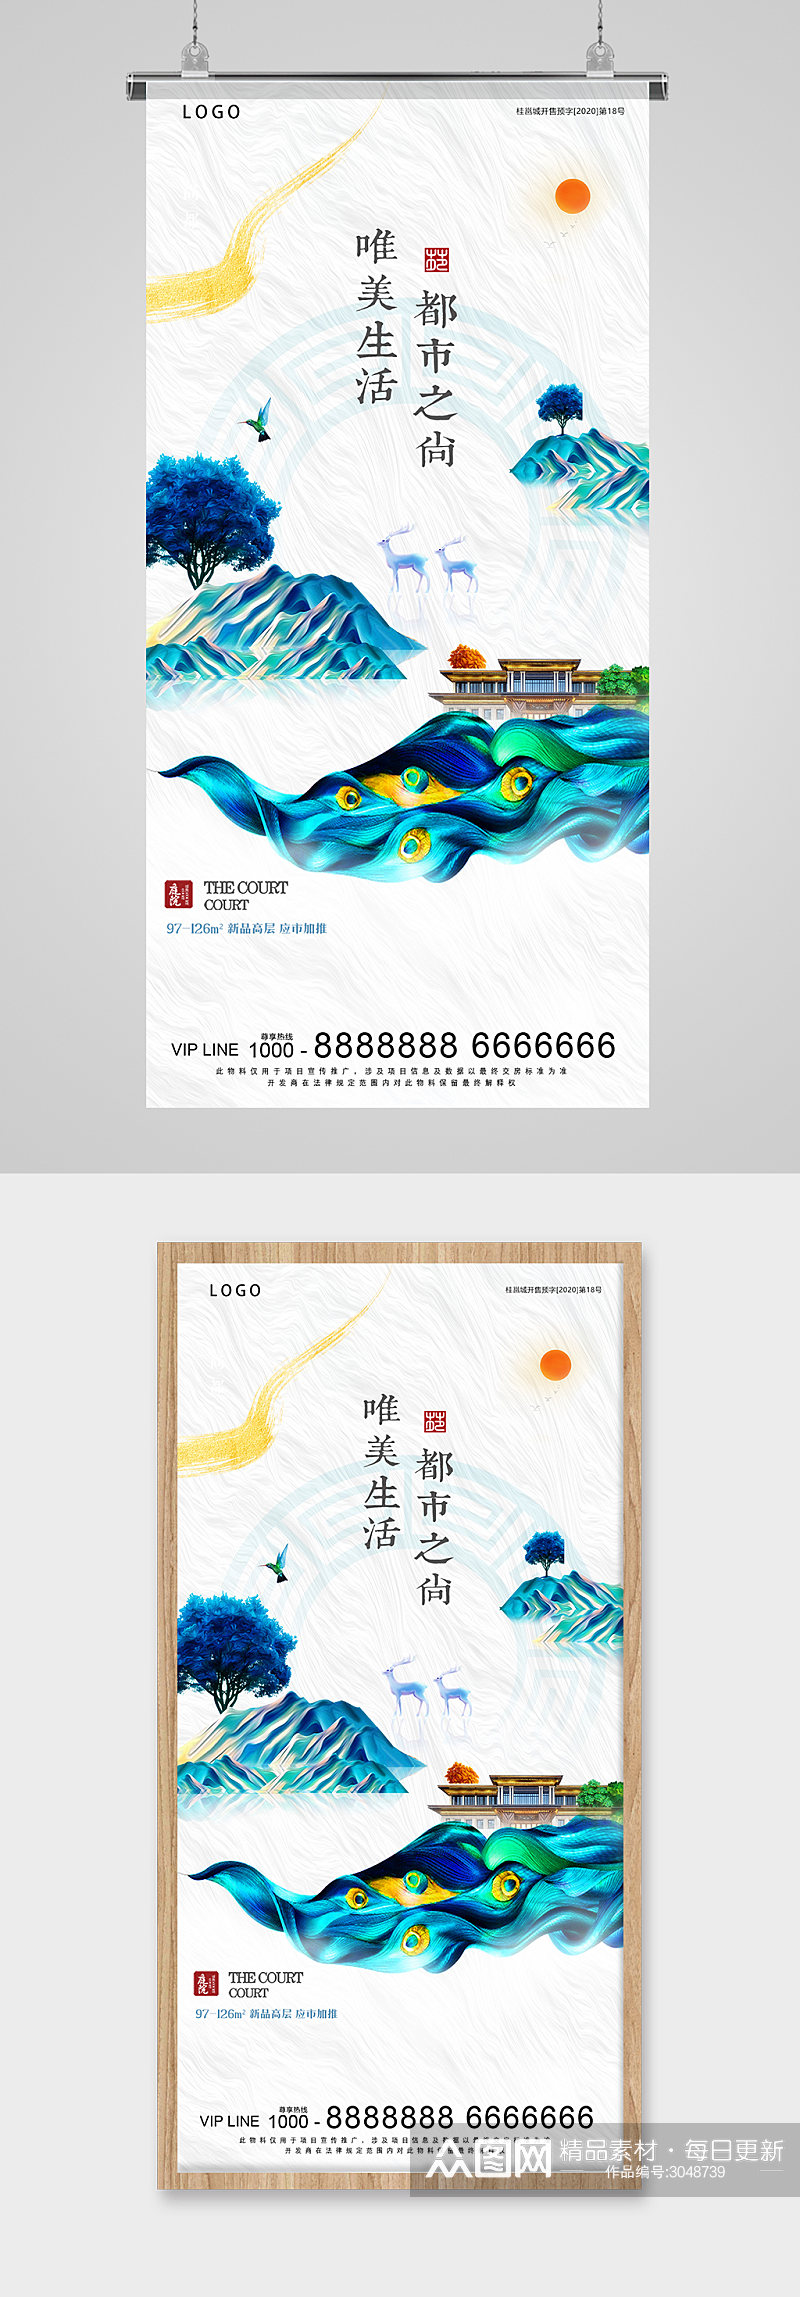 中式古典彩色房地产海报素材